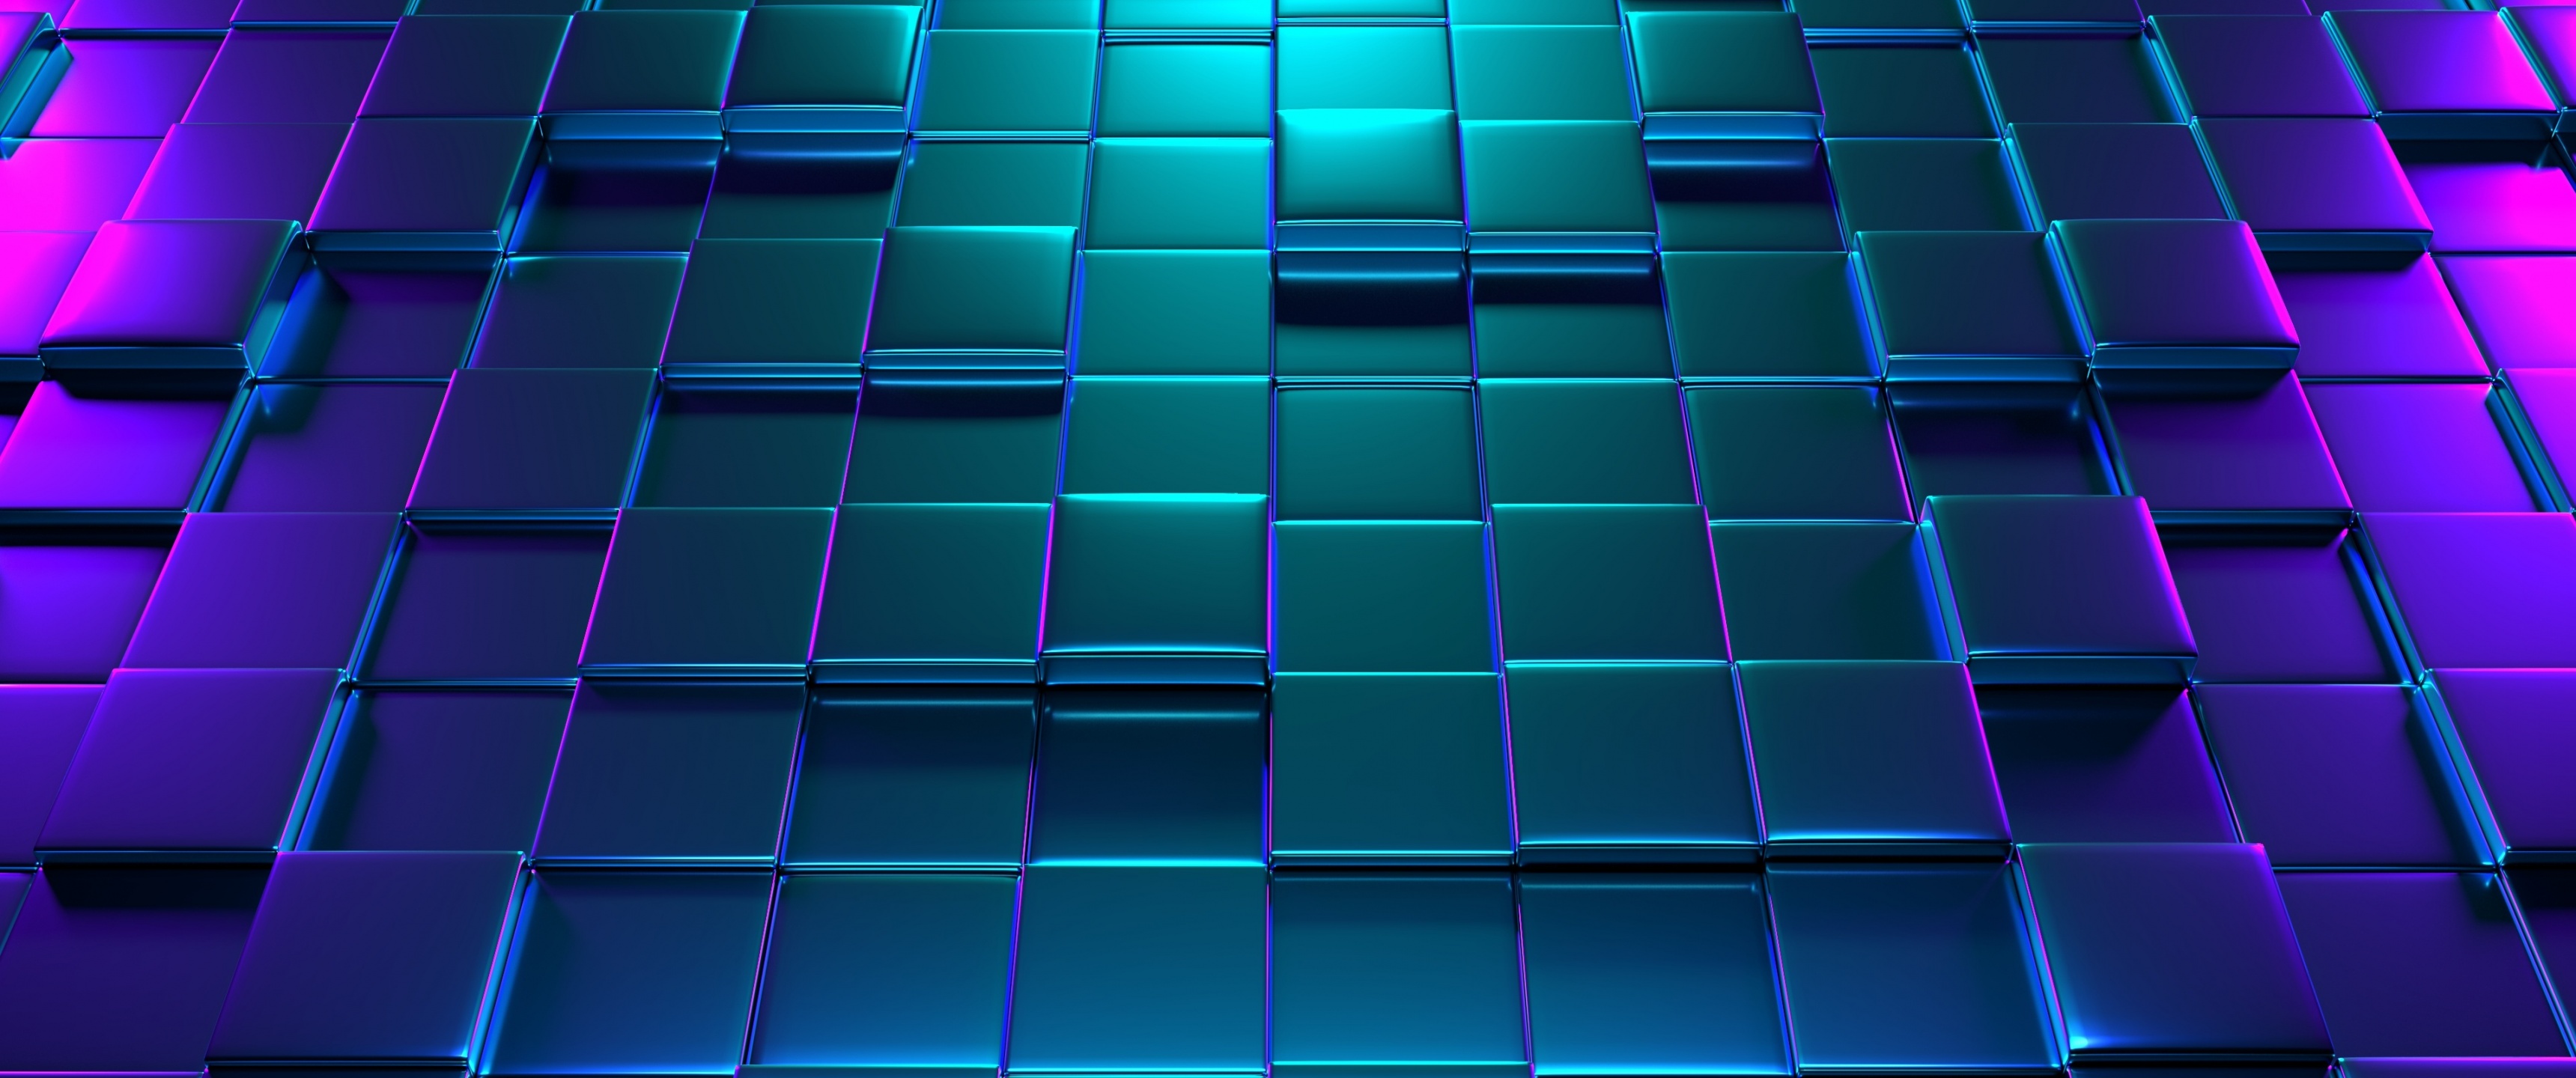 49+] 3D Blue Wallpaper - WallpaperSafari